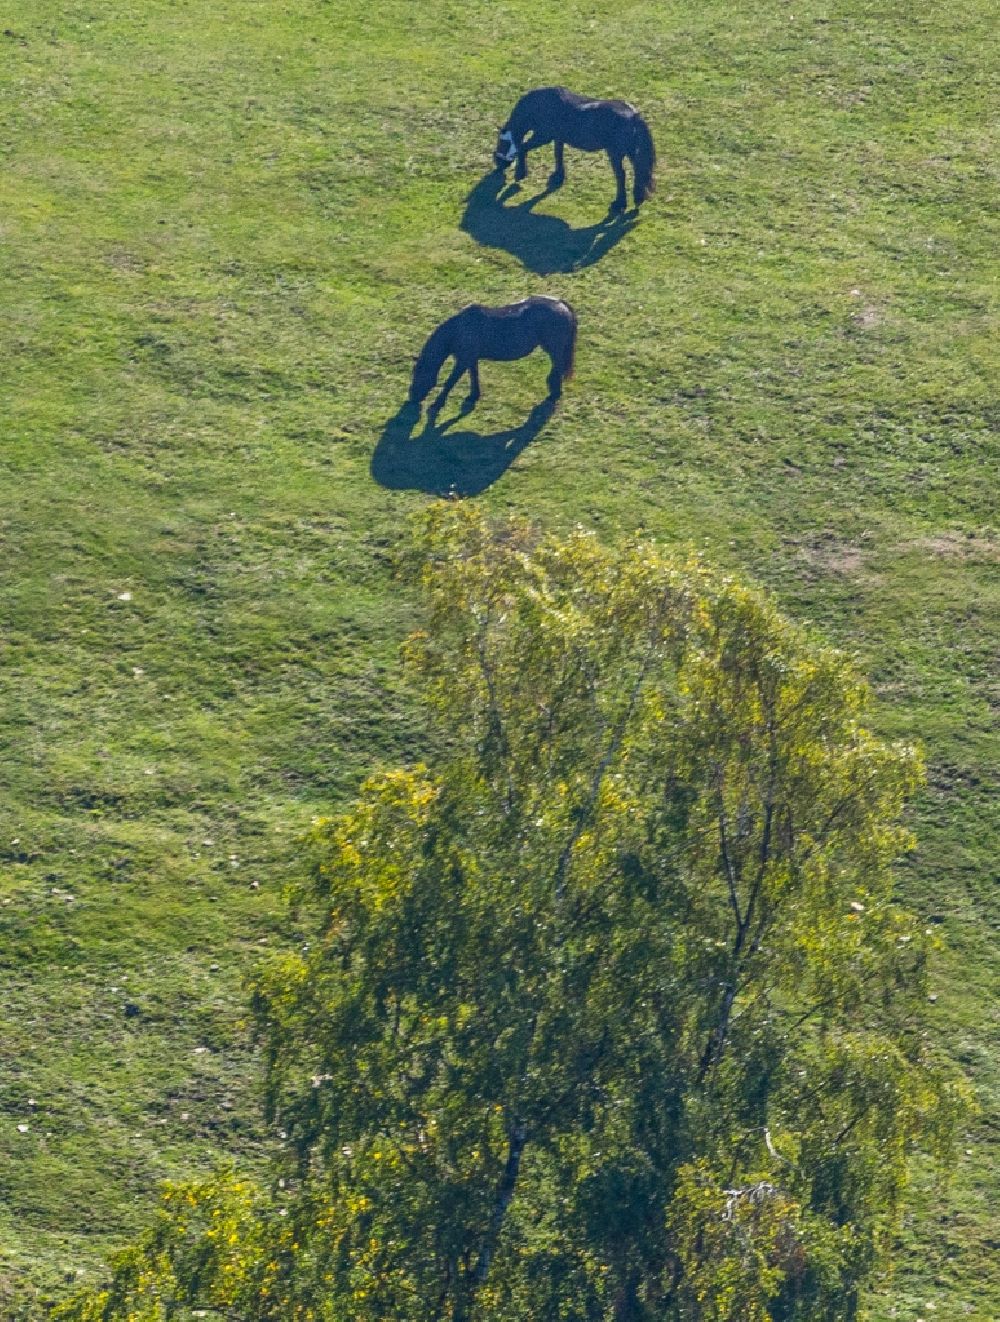 Luftbild Breckerfeld - Grasflächen- Strukturen einer Feld- Landschaft Pferdekoppel in Breckerfeld im Bundesland Nordrhein-Westfalen, Deutschland